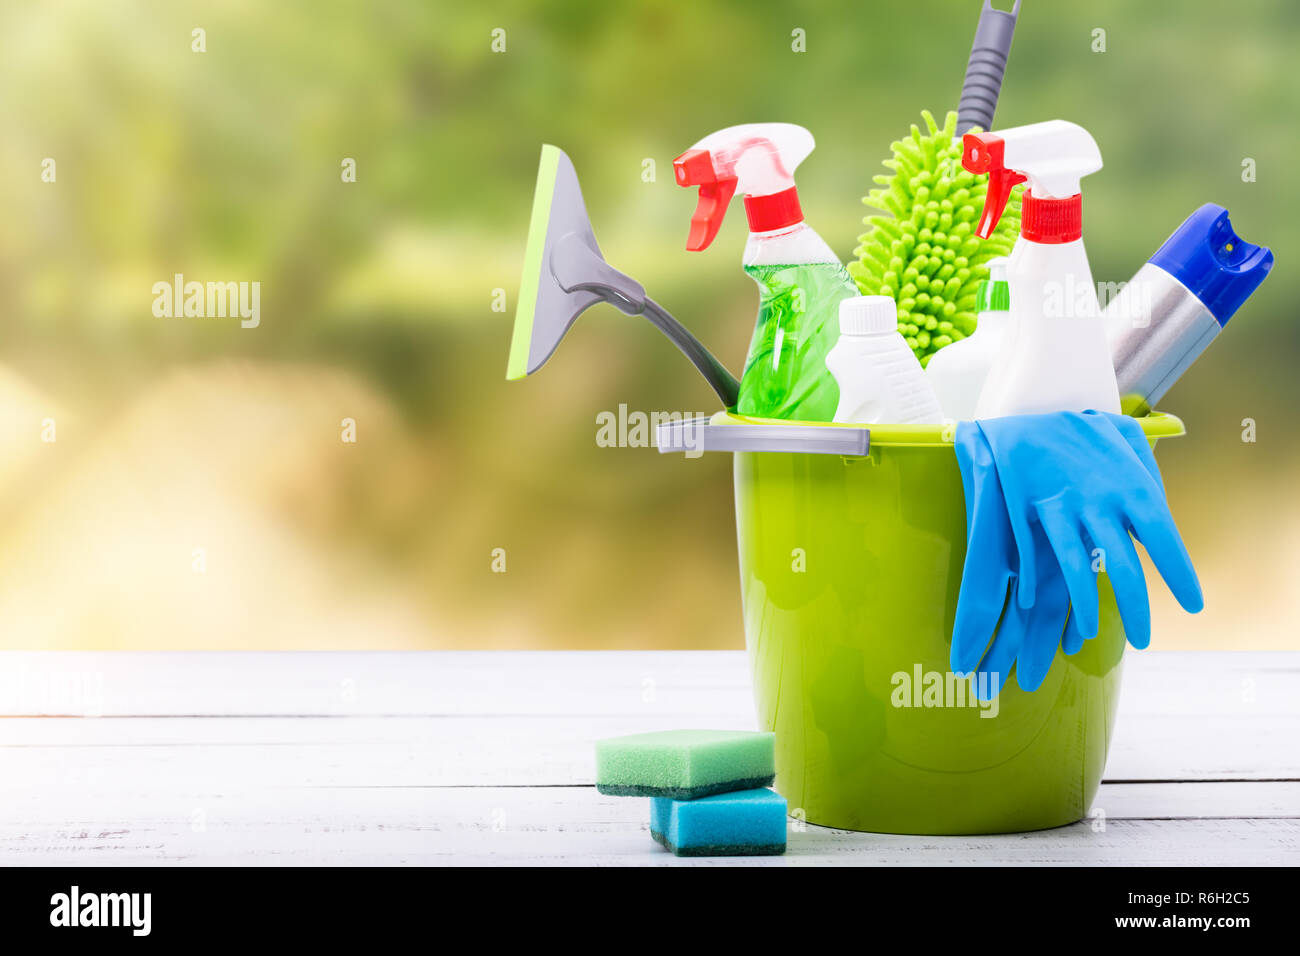 Reinigung Konzept der Reinigungsmittel benötigt, um die Reinigung zu Frühling. Reinigungsgeräte am Frühling Hintergrund. Stockfoto